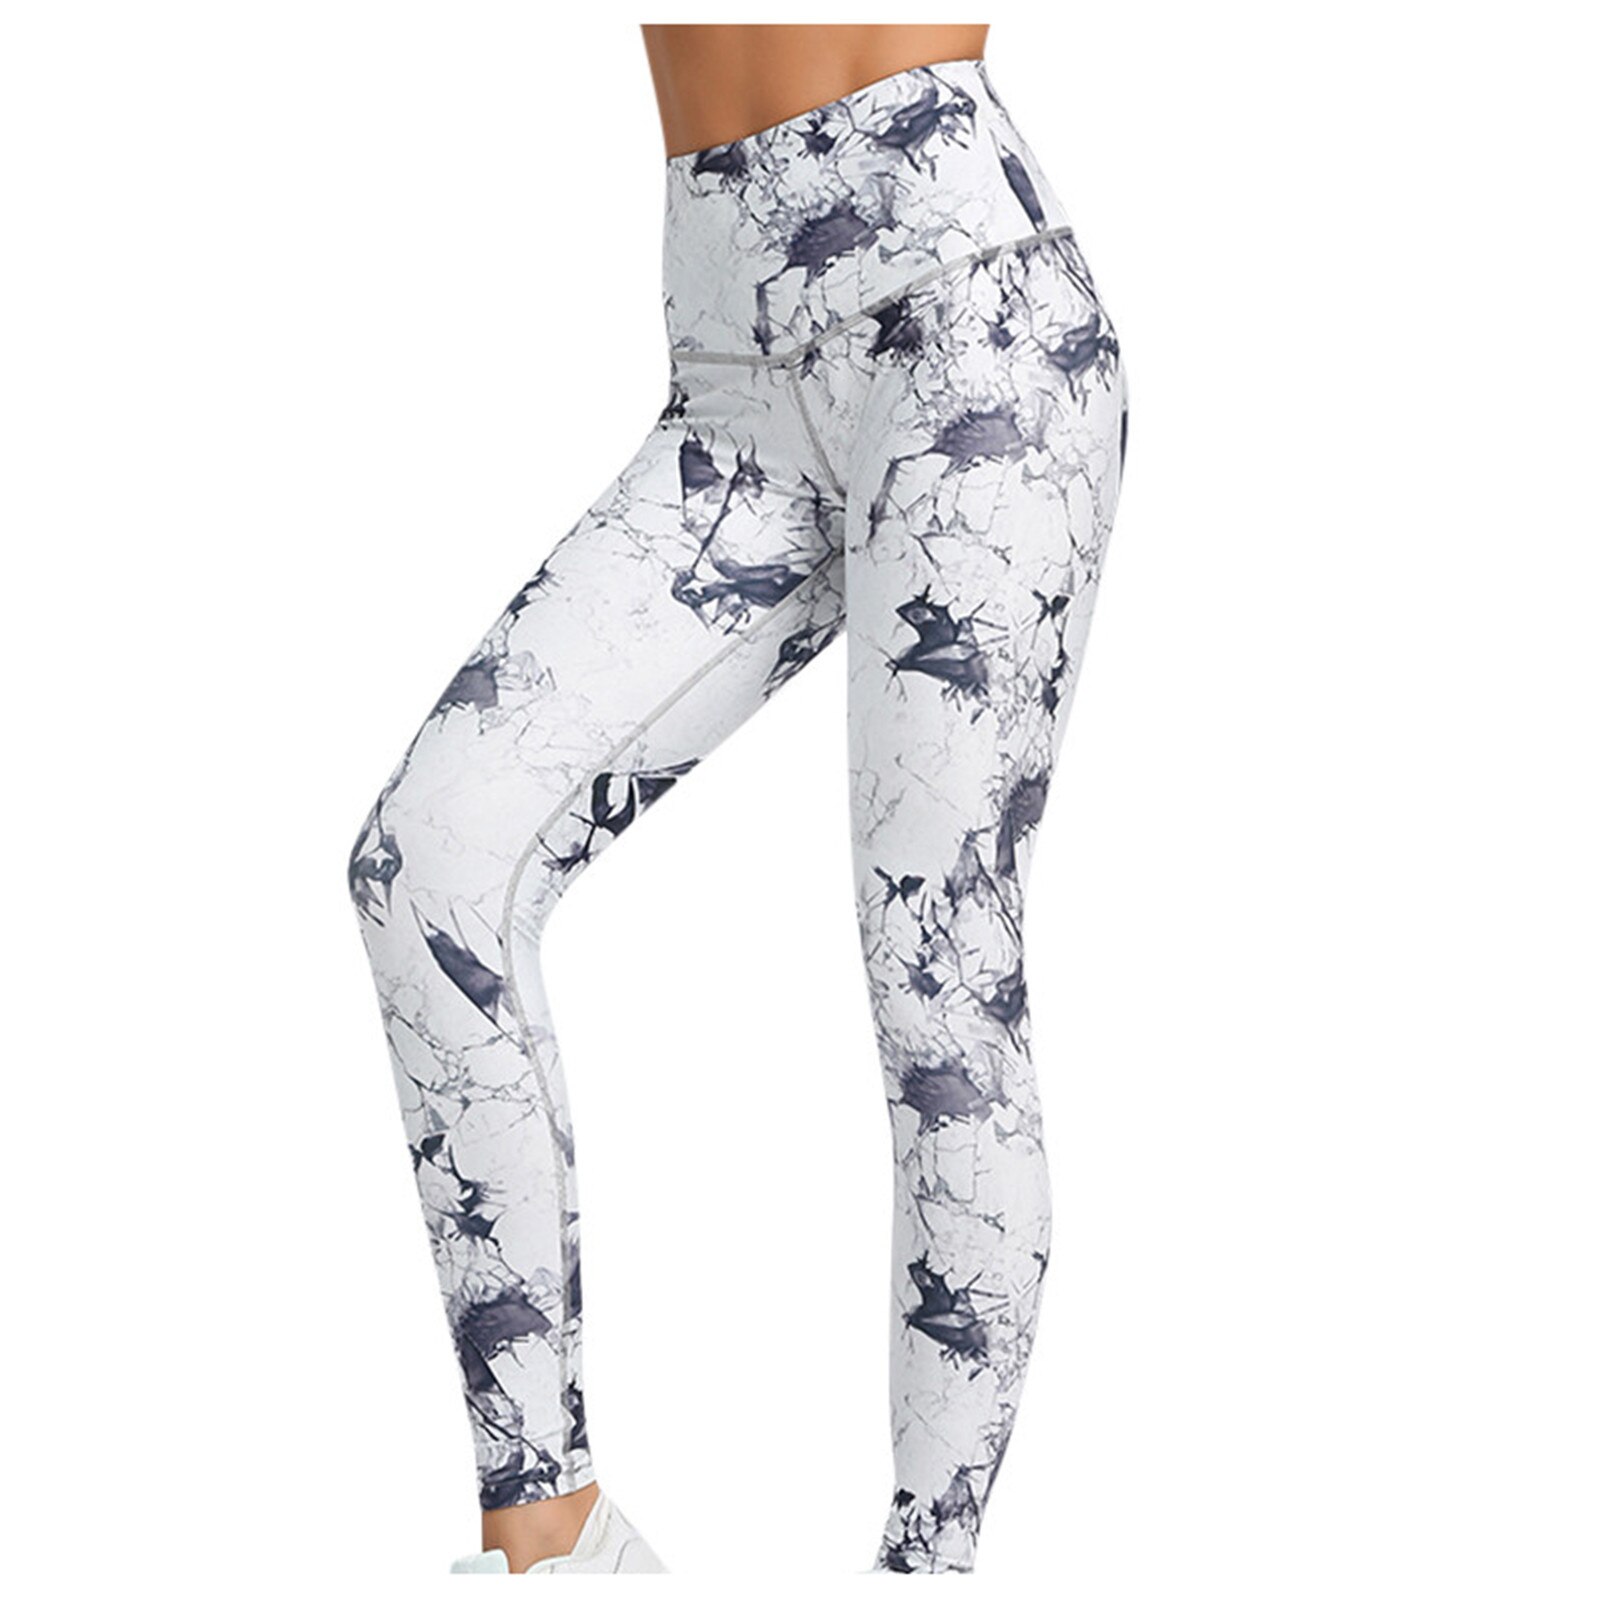 Women's Print Sport Yoga Pants Workout Fitness Leg...